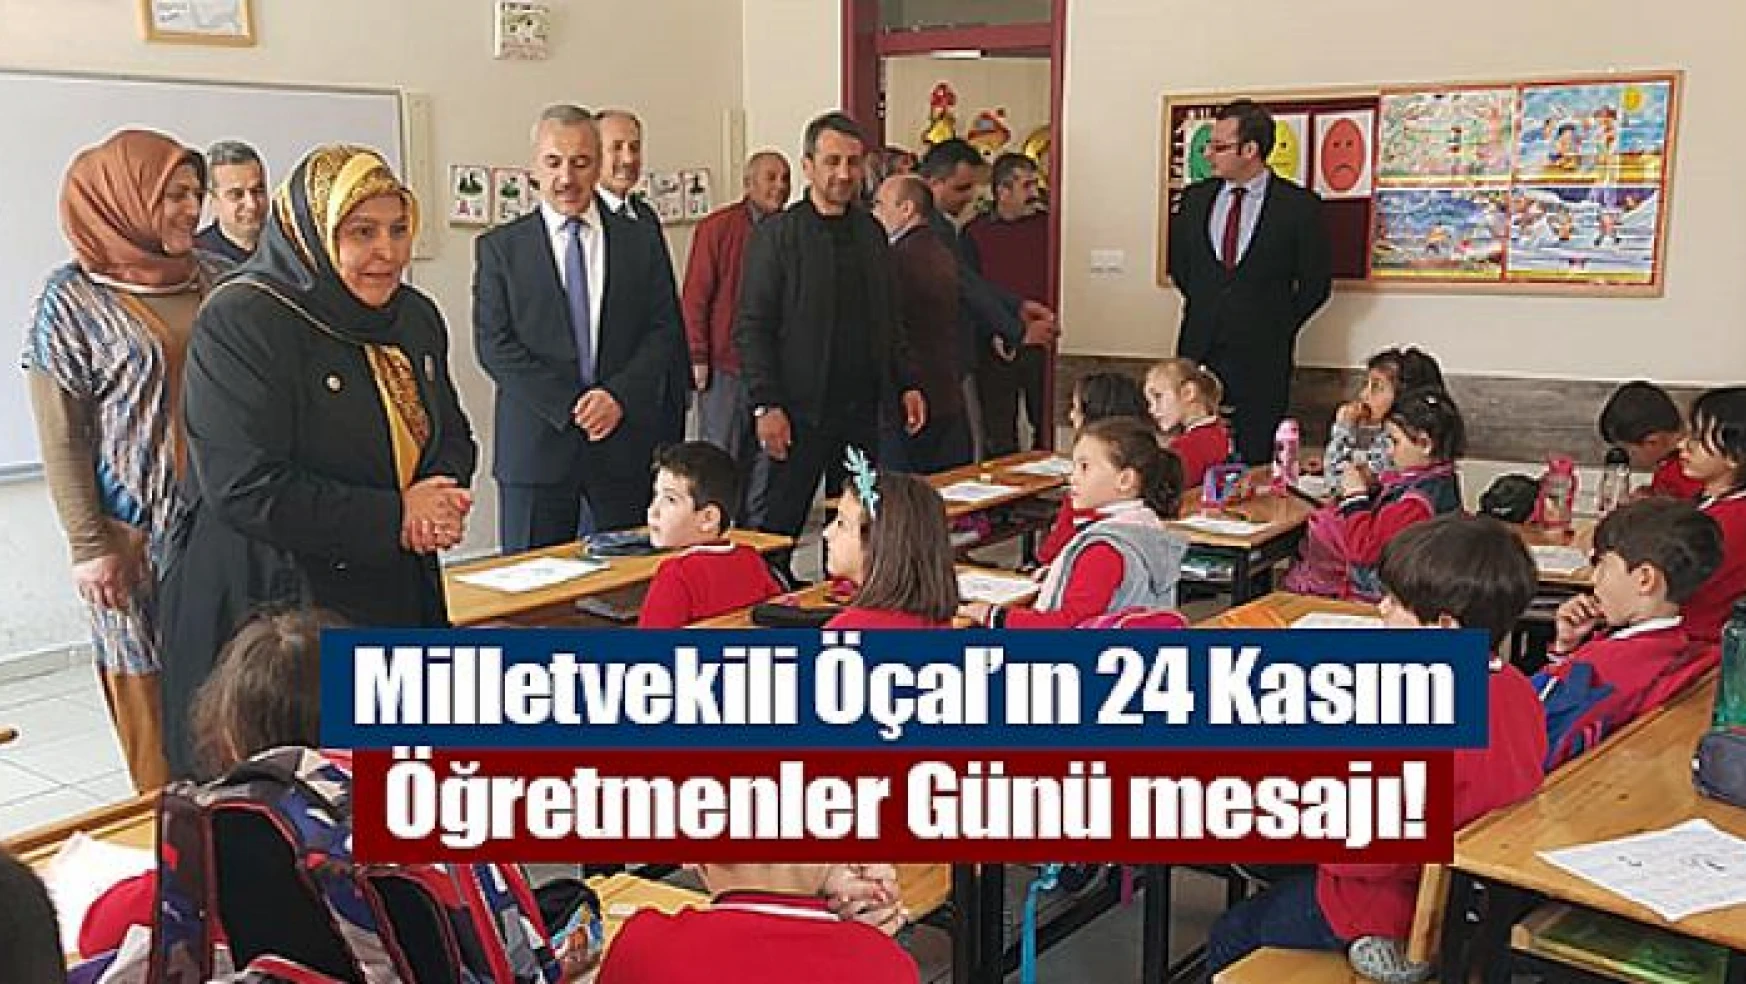 Milletvekili Öçal'ın 24 Kasım Öğretmenler Günü mesajı!